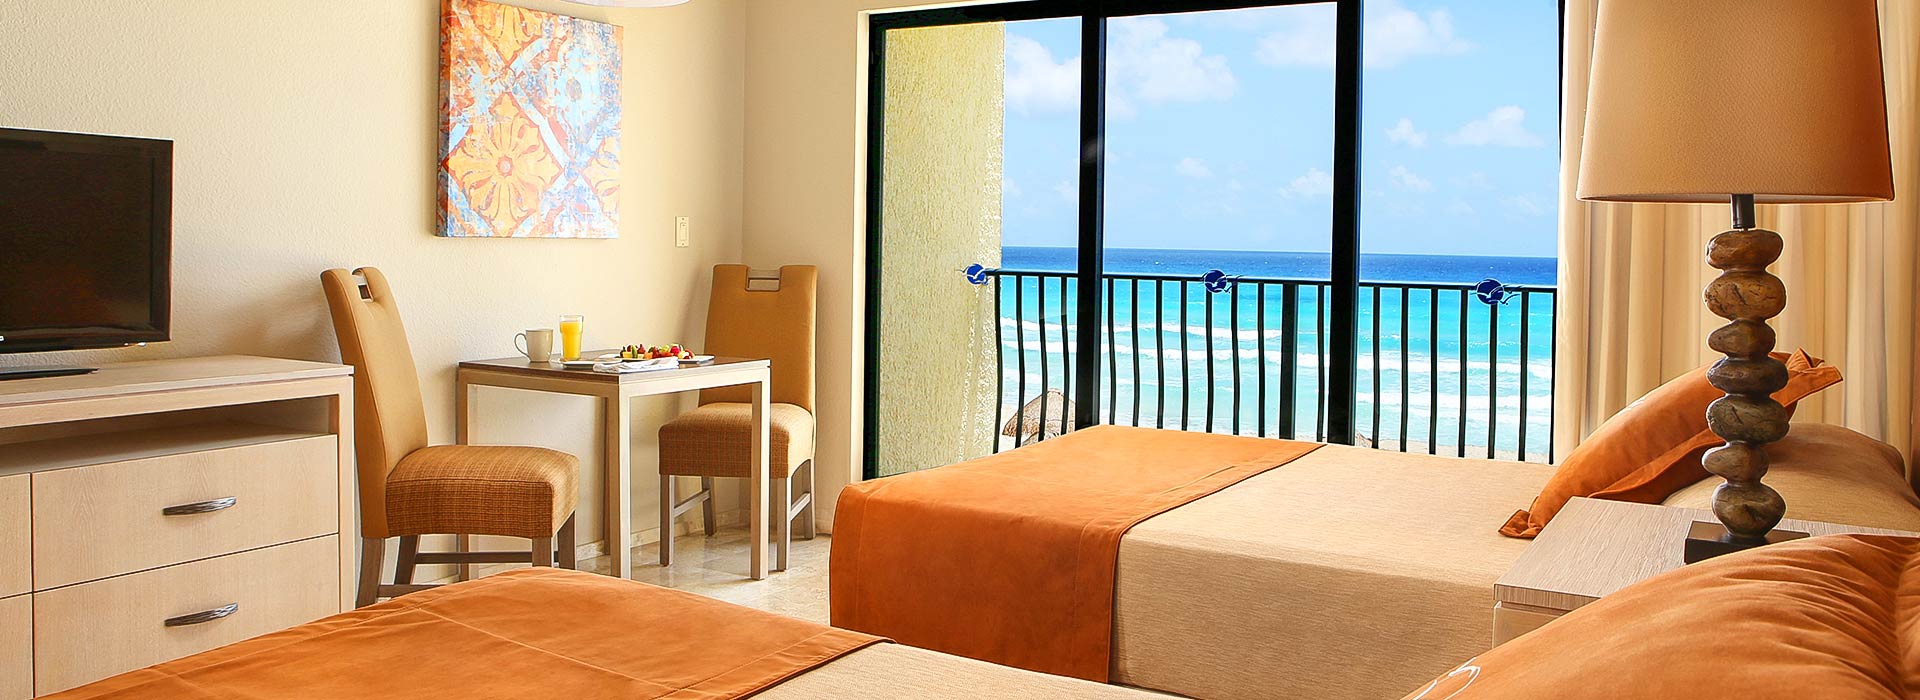 Villa de dos recámaras con vistas al mar y dos camas dobles en el Resort Todo Incluido en Cancun